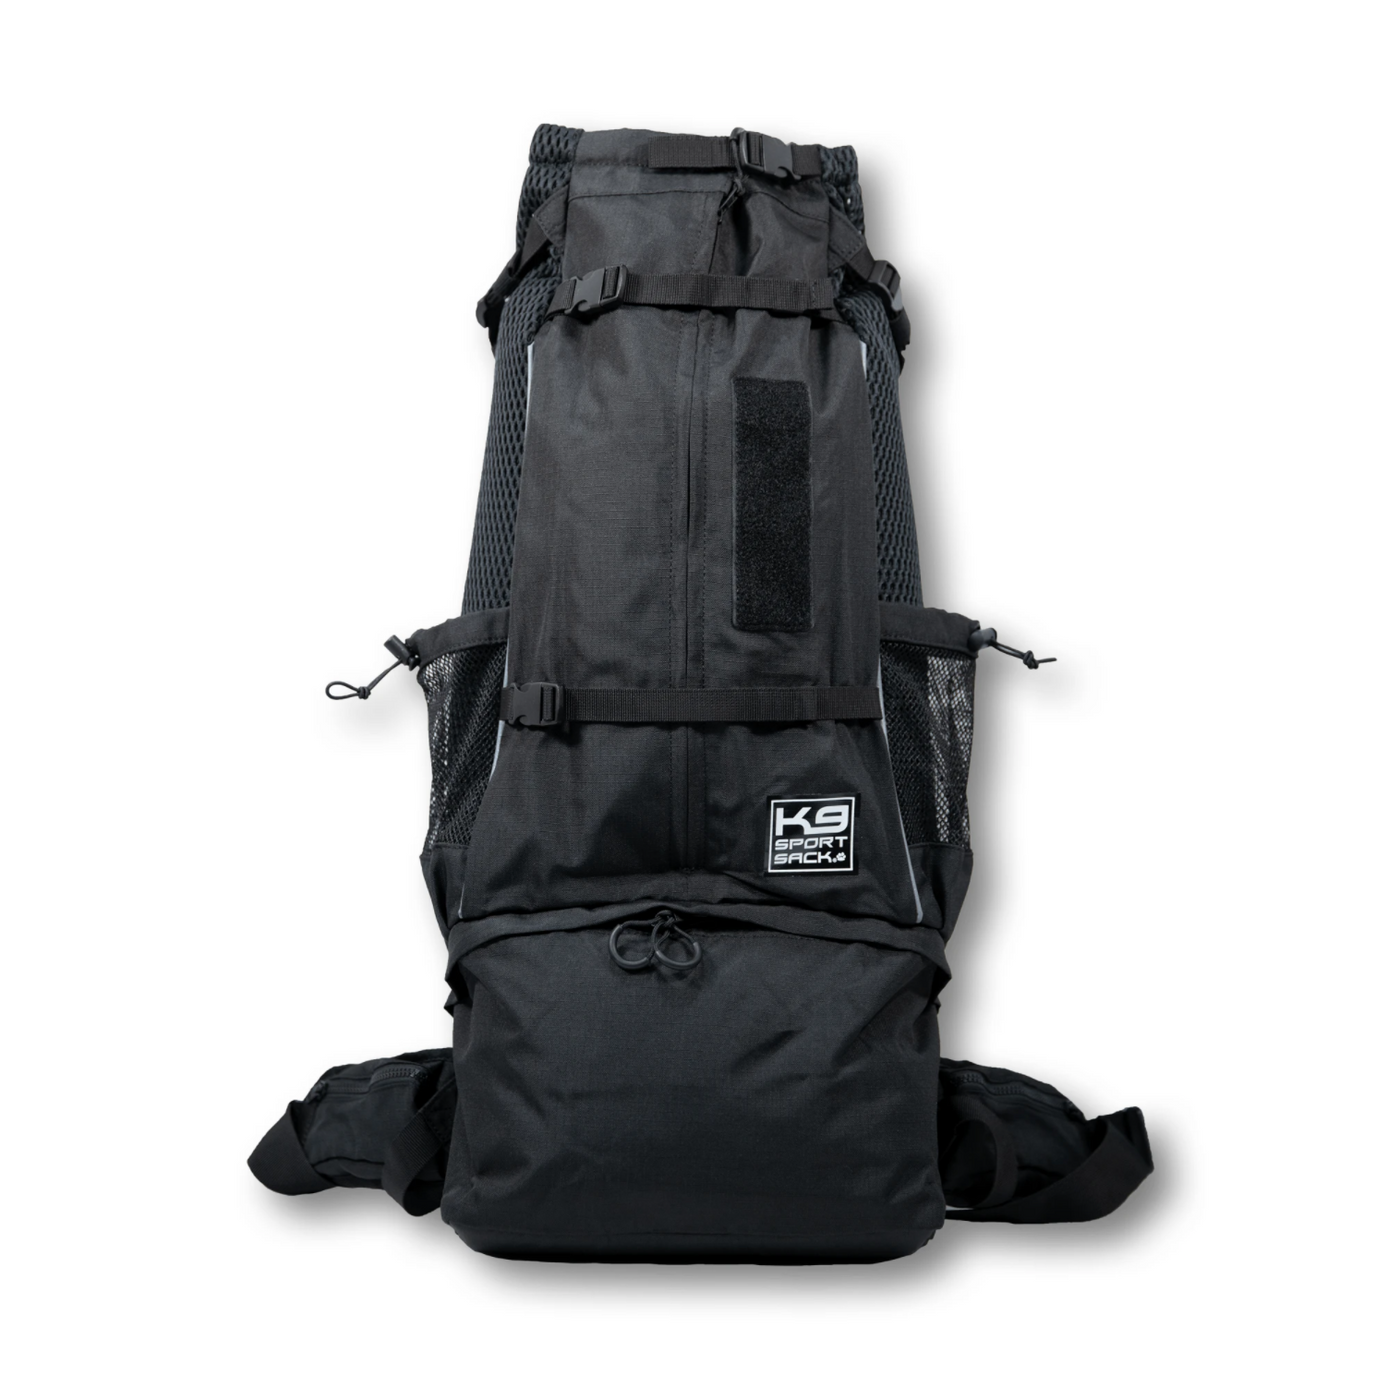 K9 SPORT SACK KNAVIGATE - The Best Backpack Dog Carrier in Black